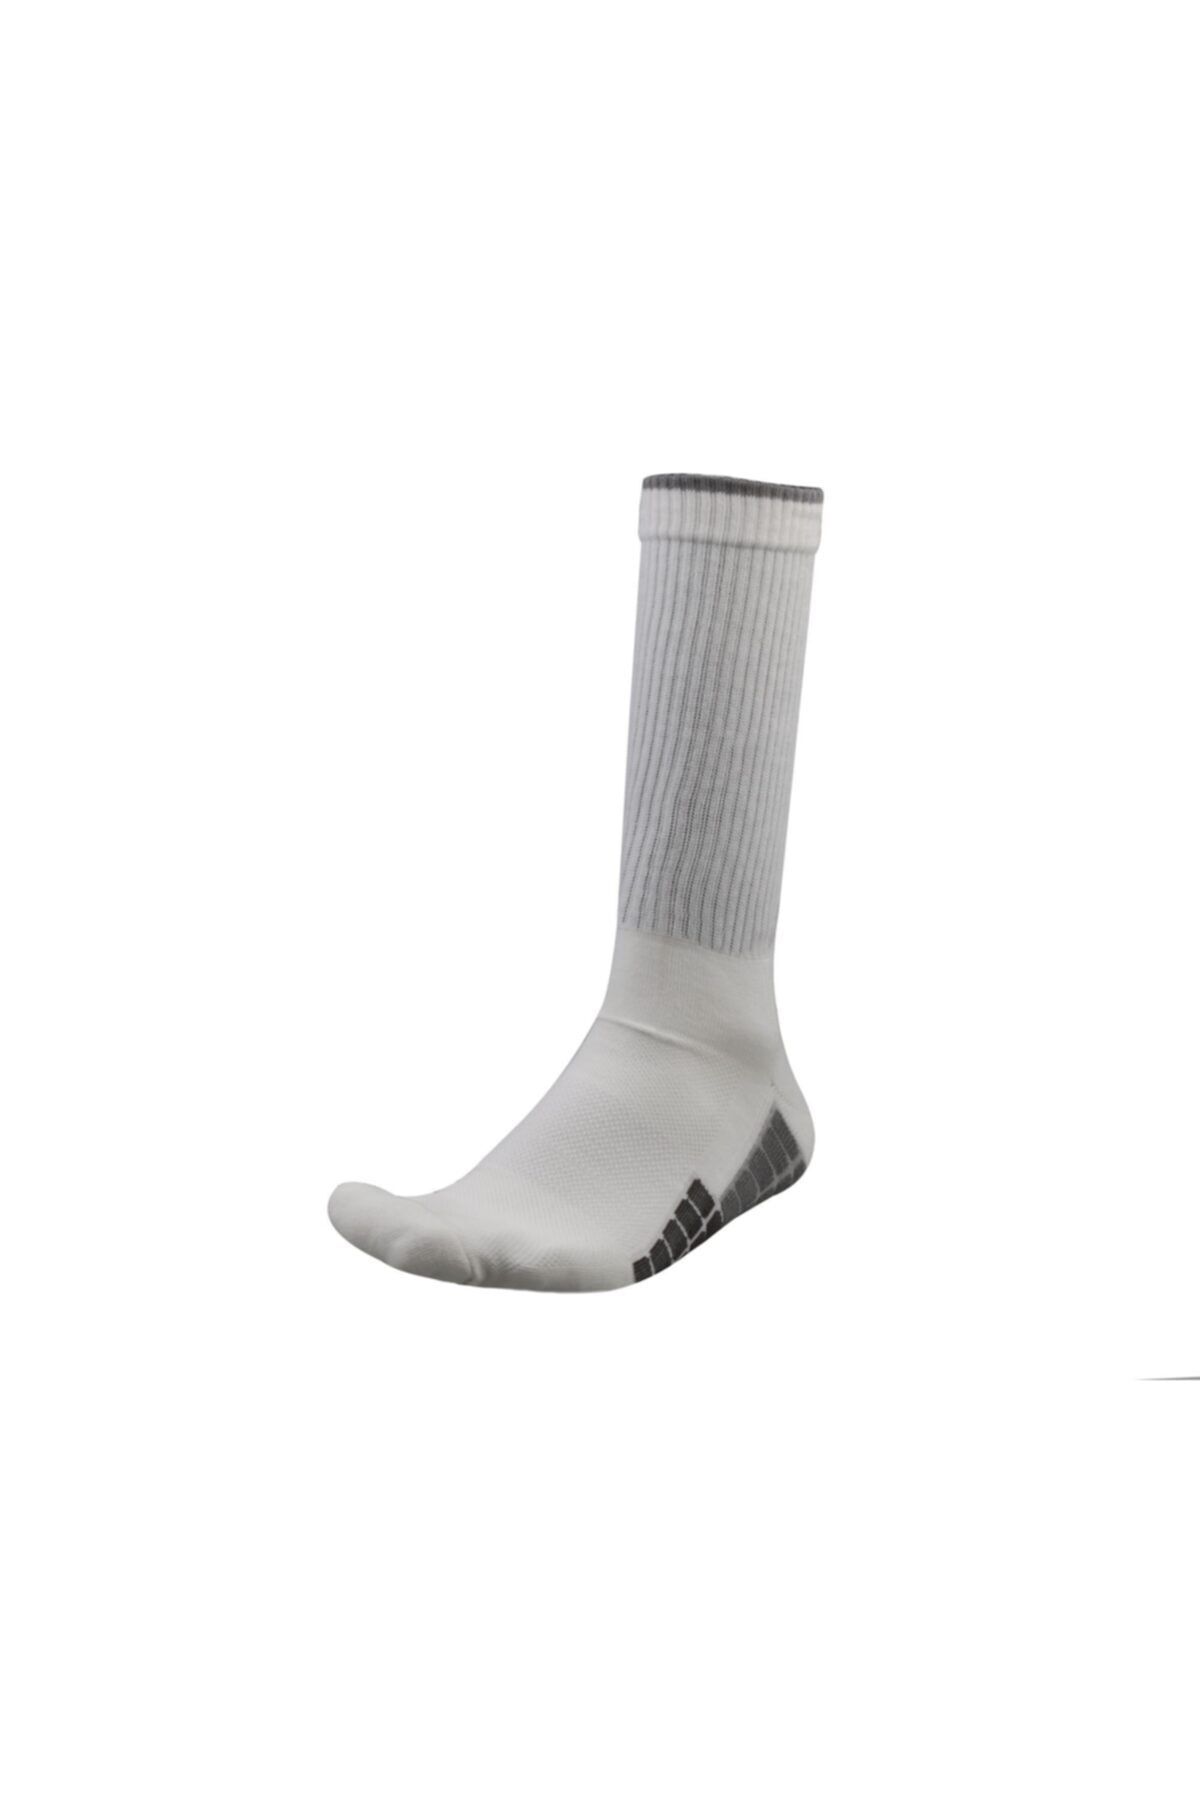 Korayspor Çorap Tenıscorapbeyaz Beyaz Spor Corap